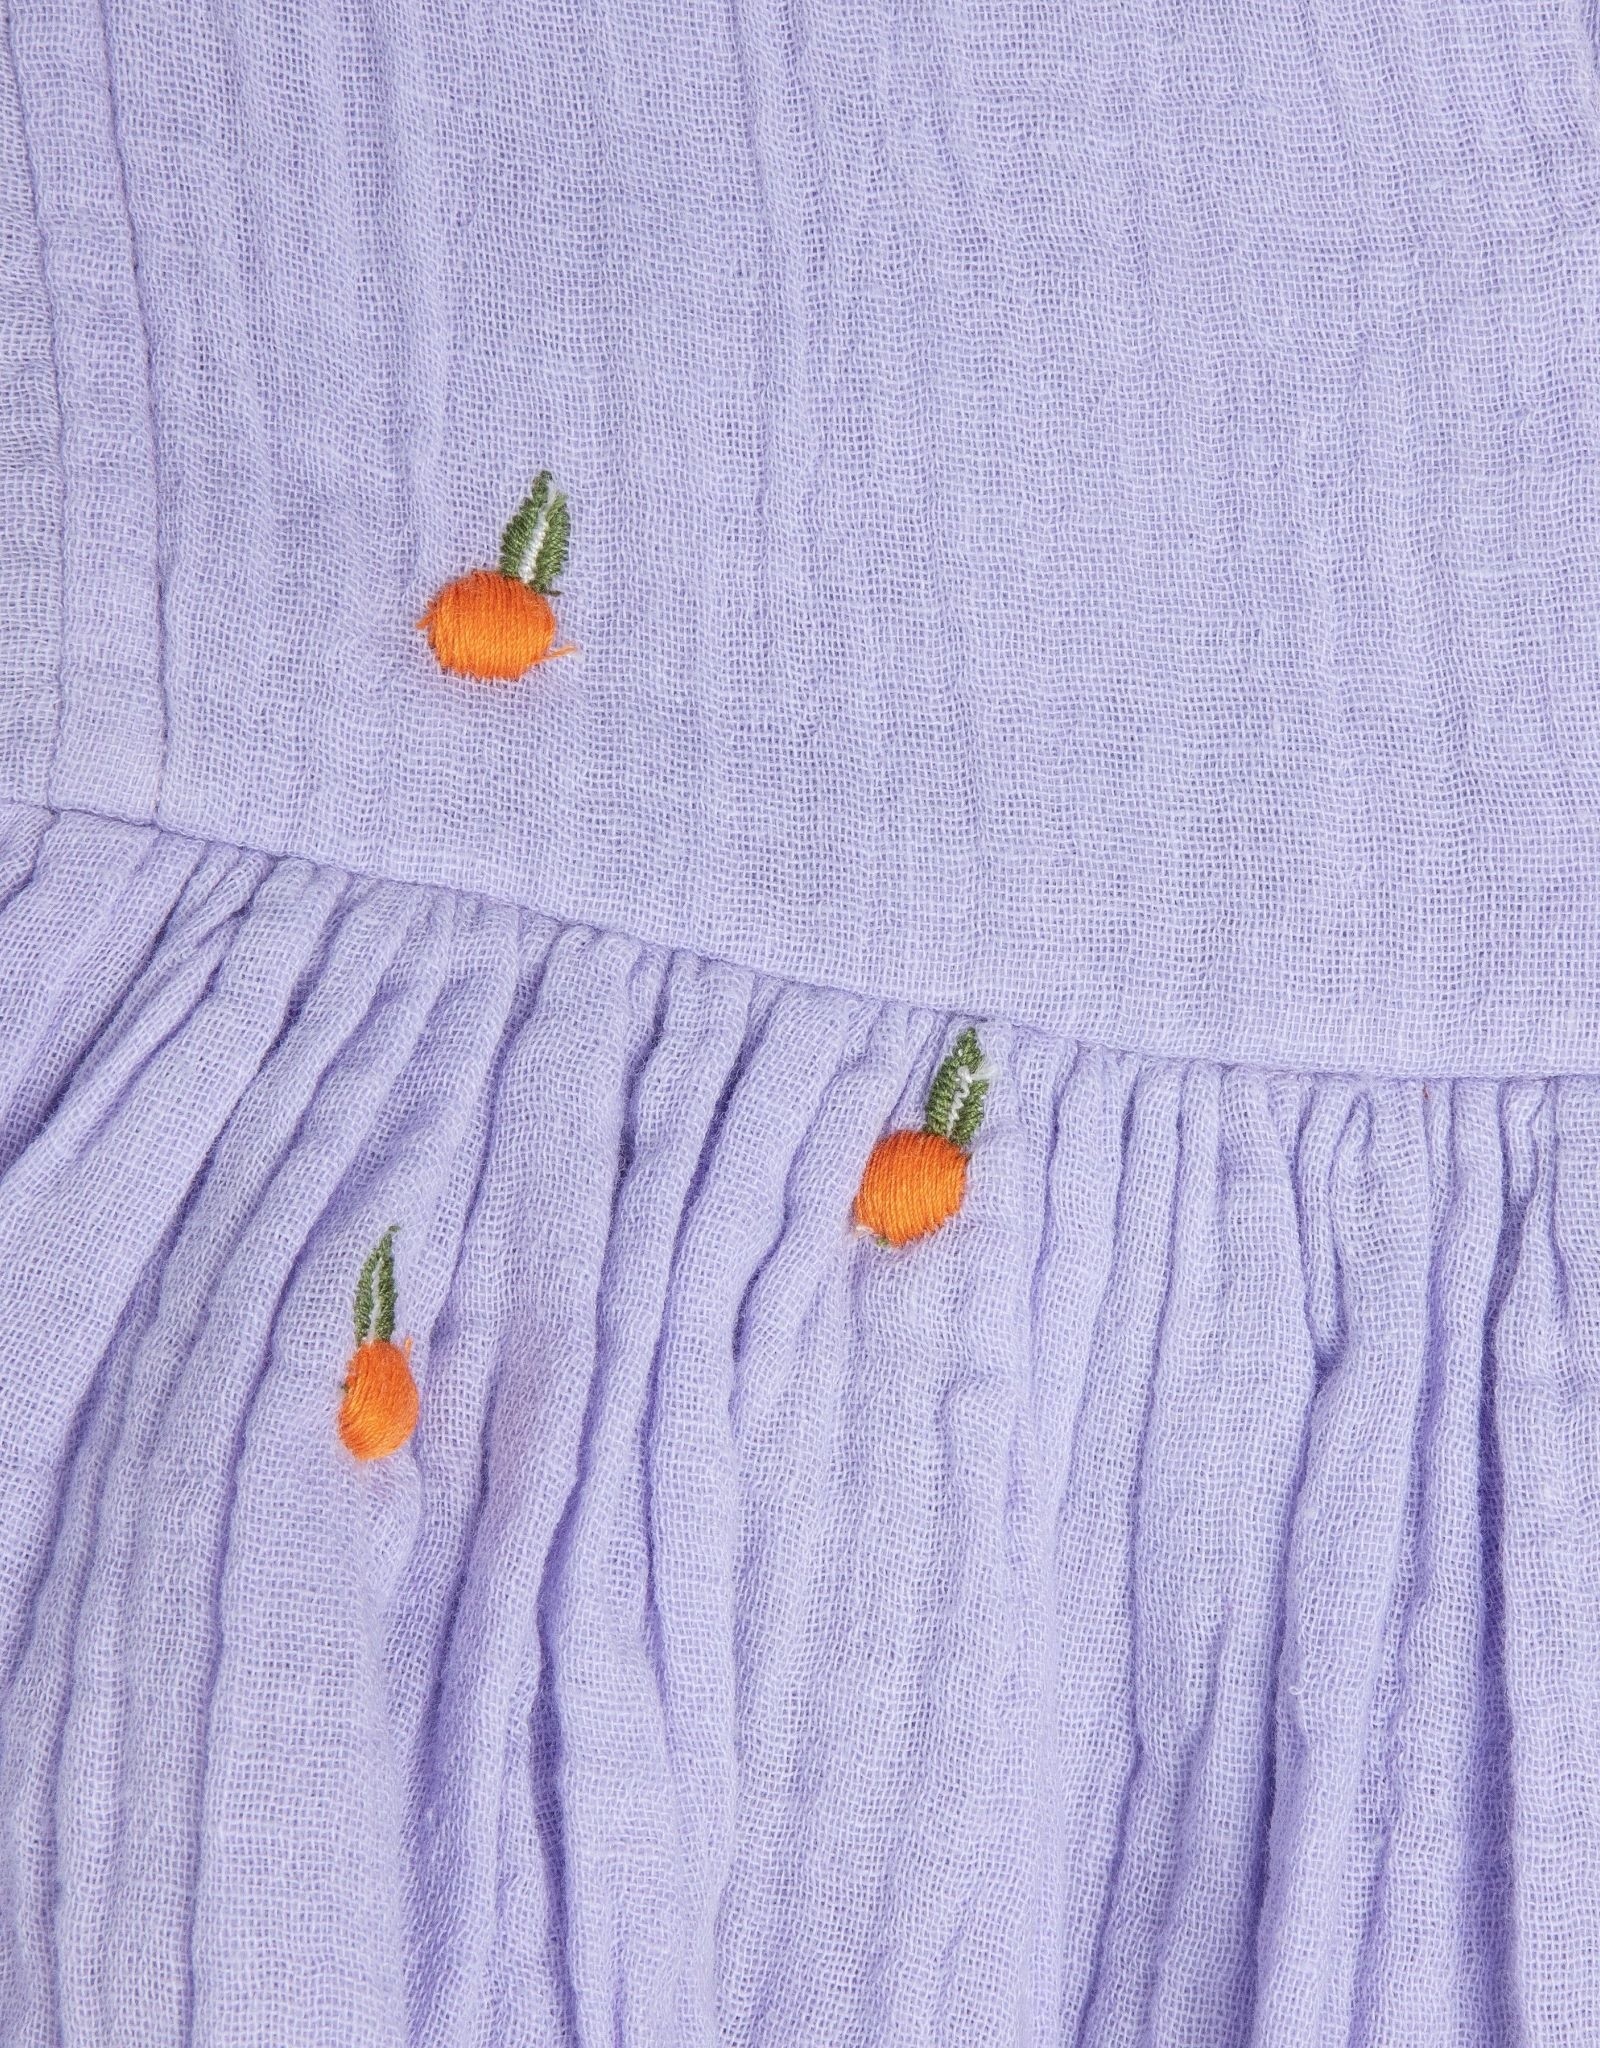 Pink Chicken girls ava bella dress - lavender oranges